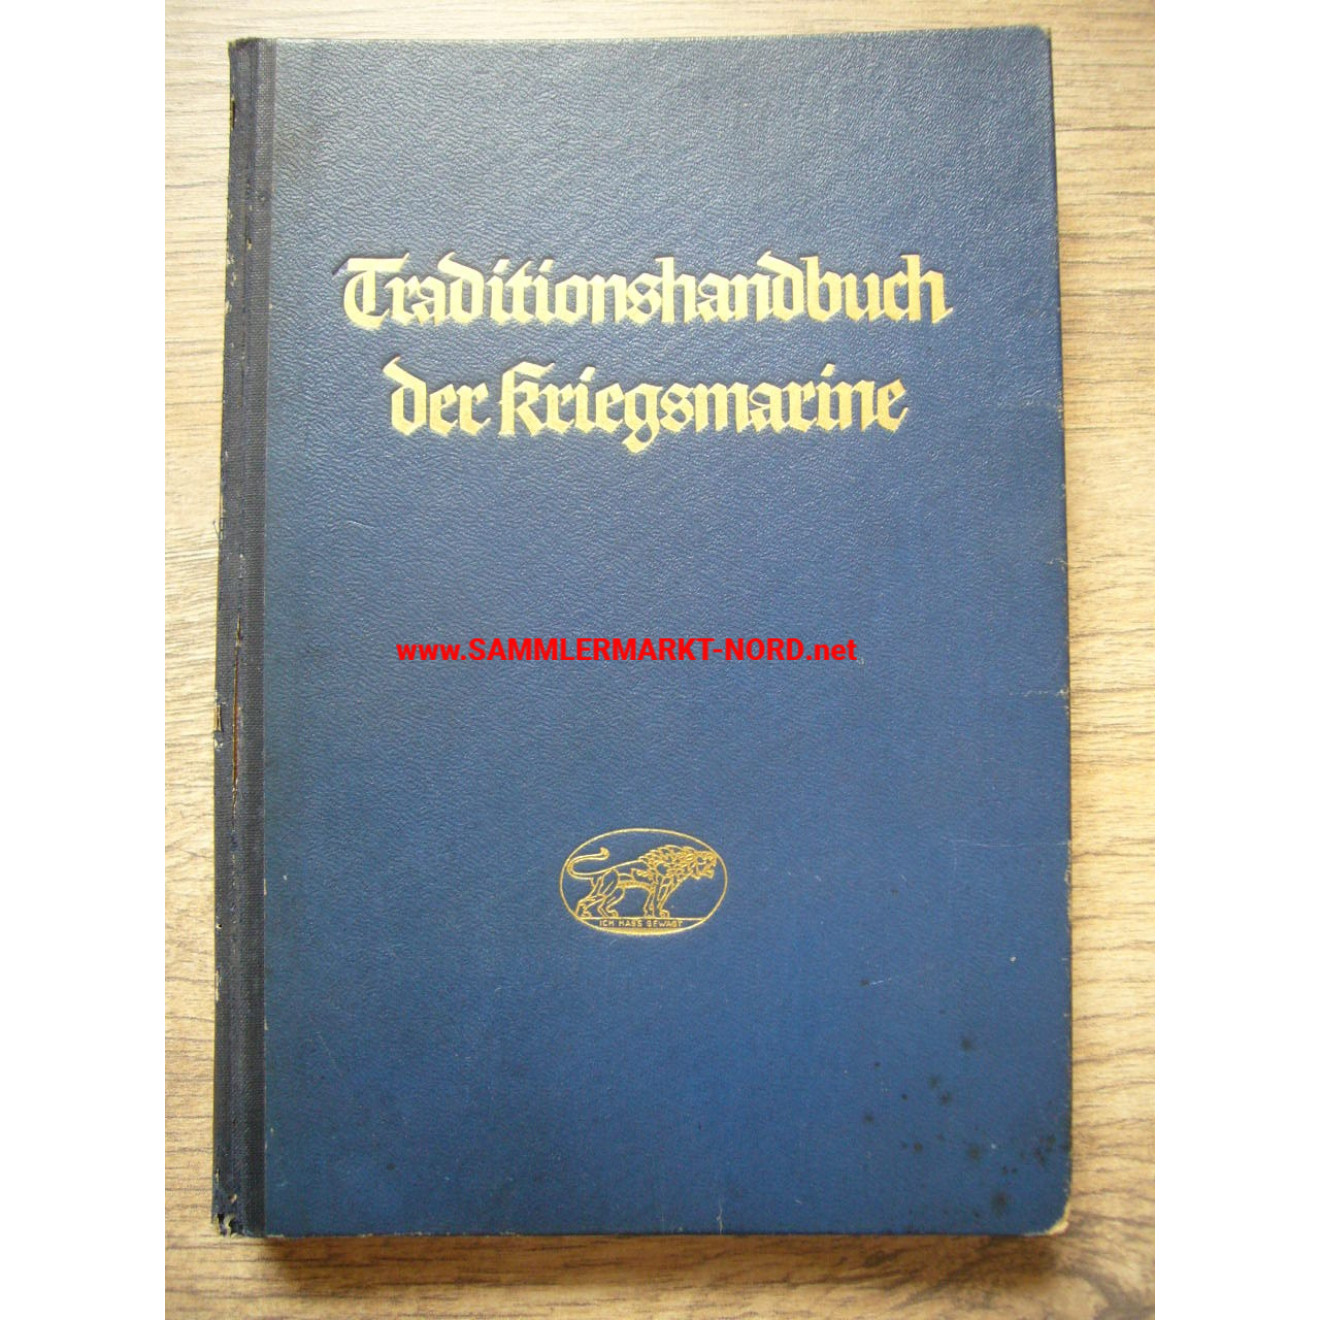 Traditionshandbuch der Kriegsmarine